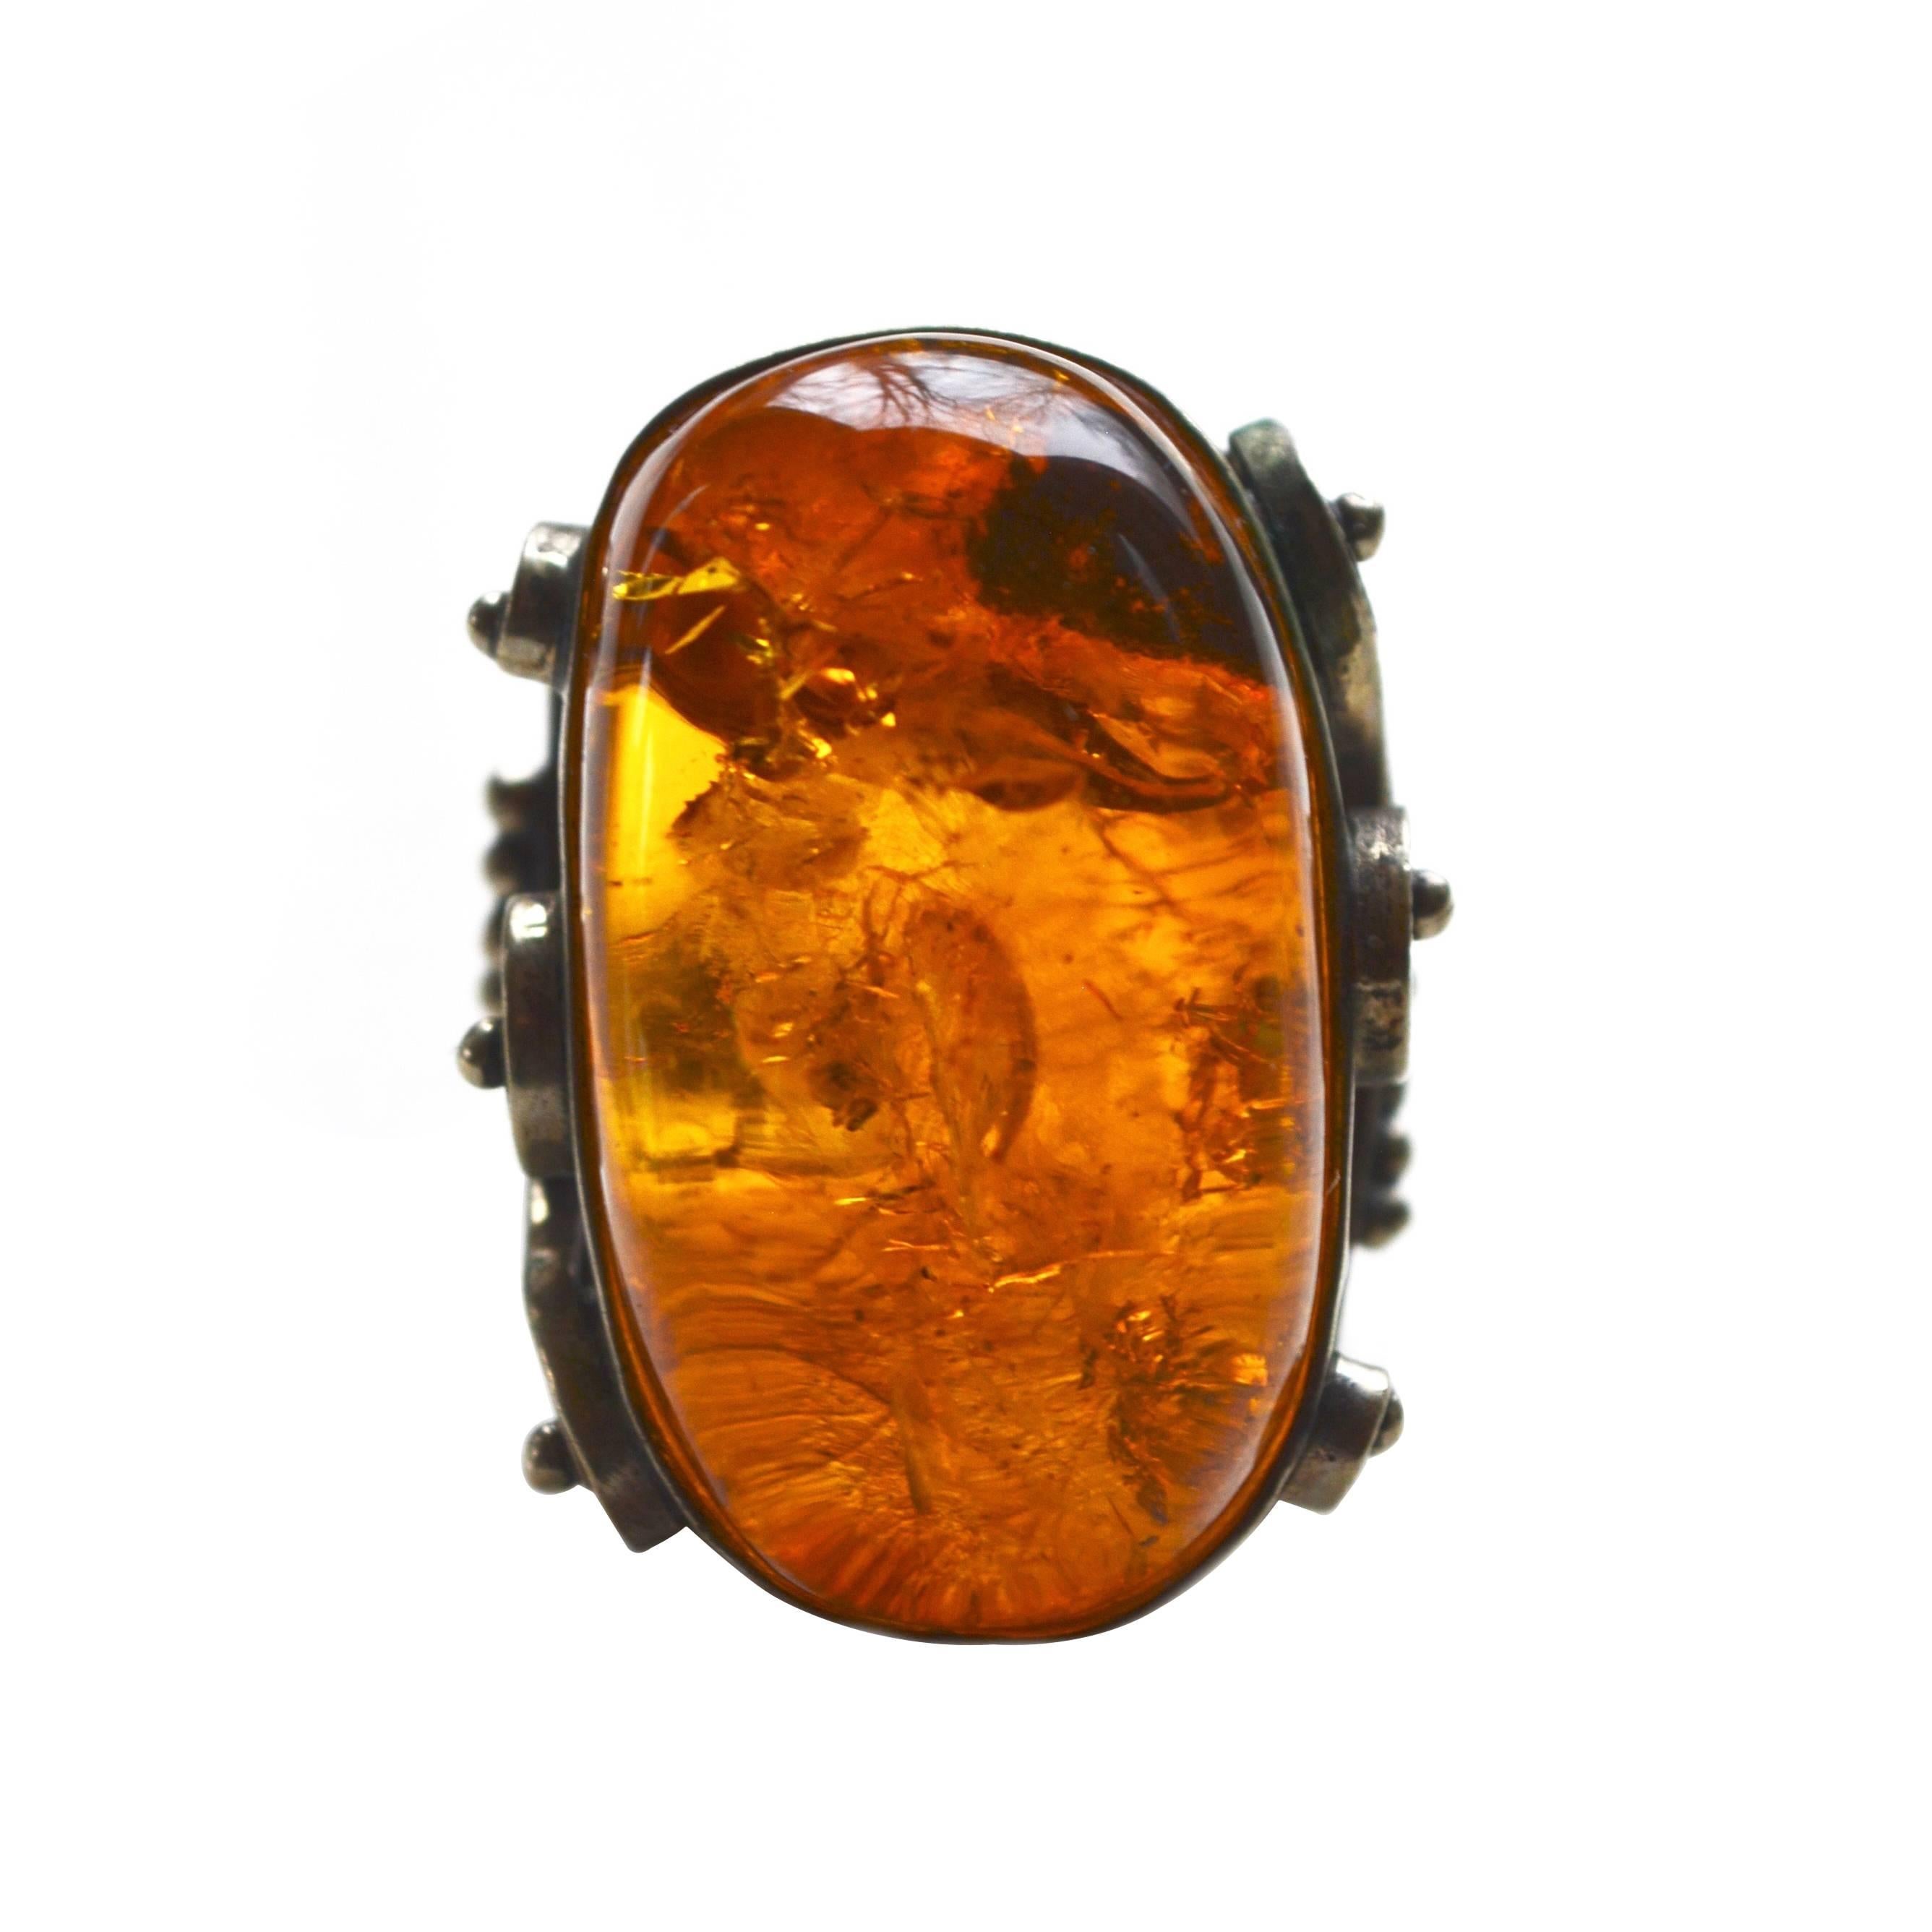 Large Latvian Amber Ring 